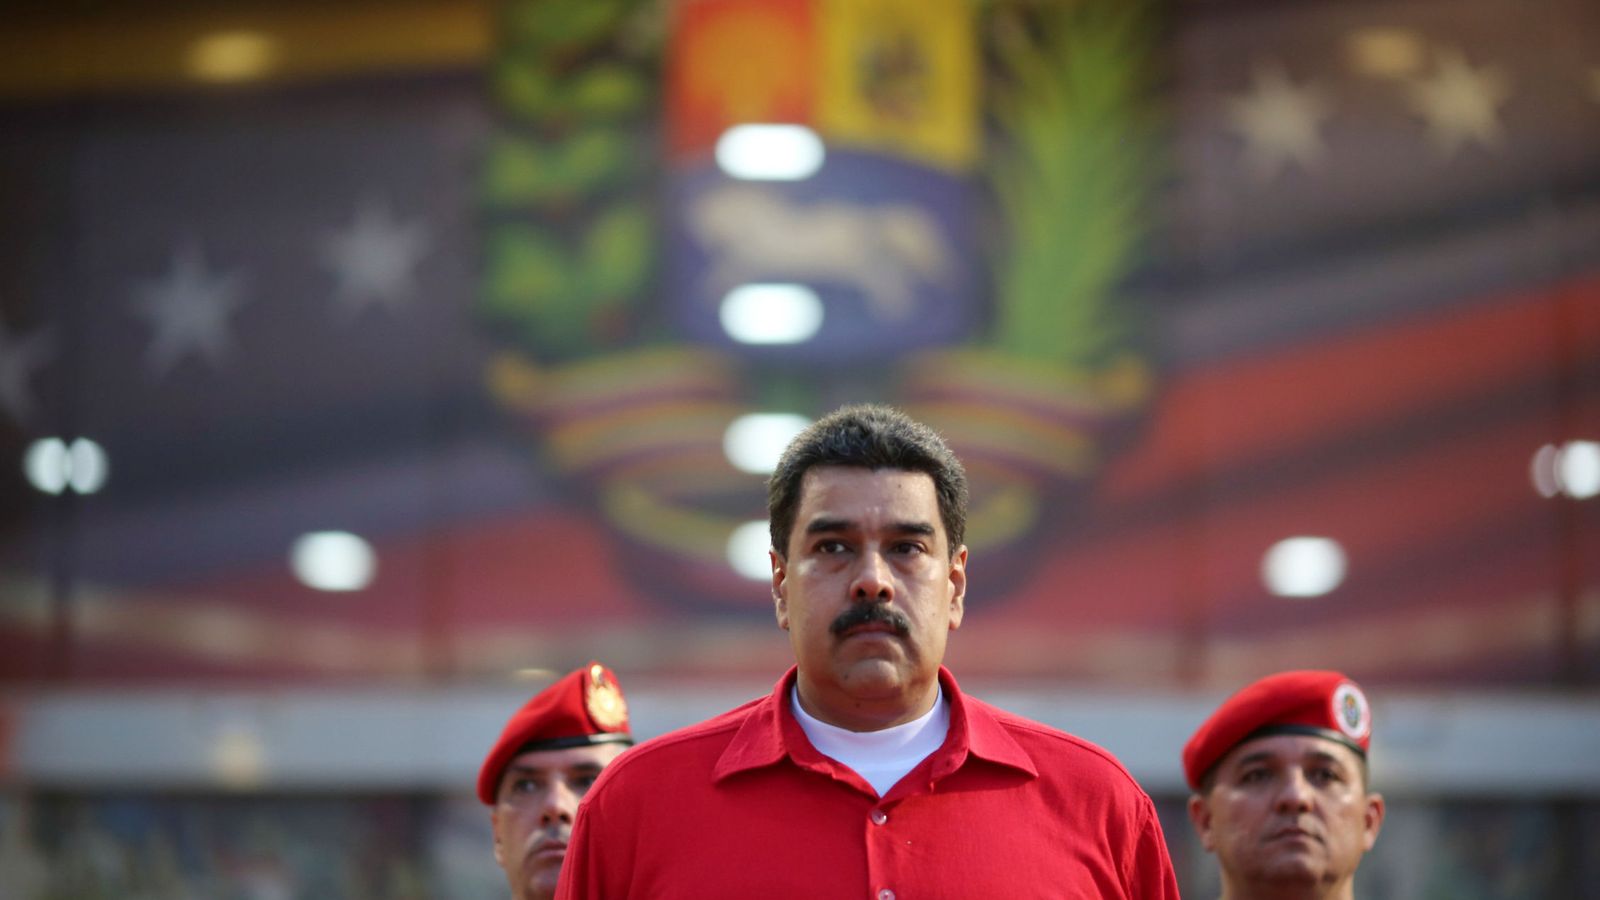 Foto: El presidente de Venezuela, Nicolás Maduro. (Reuters)